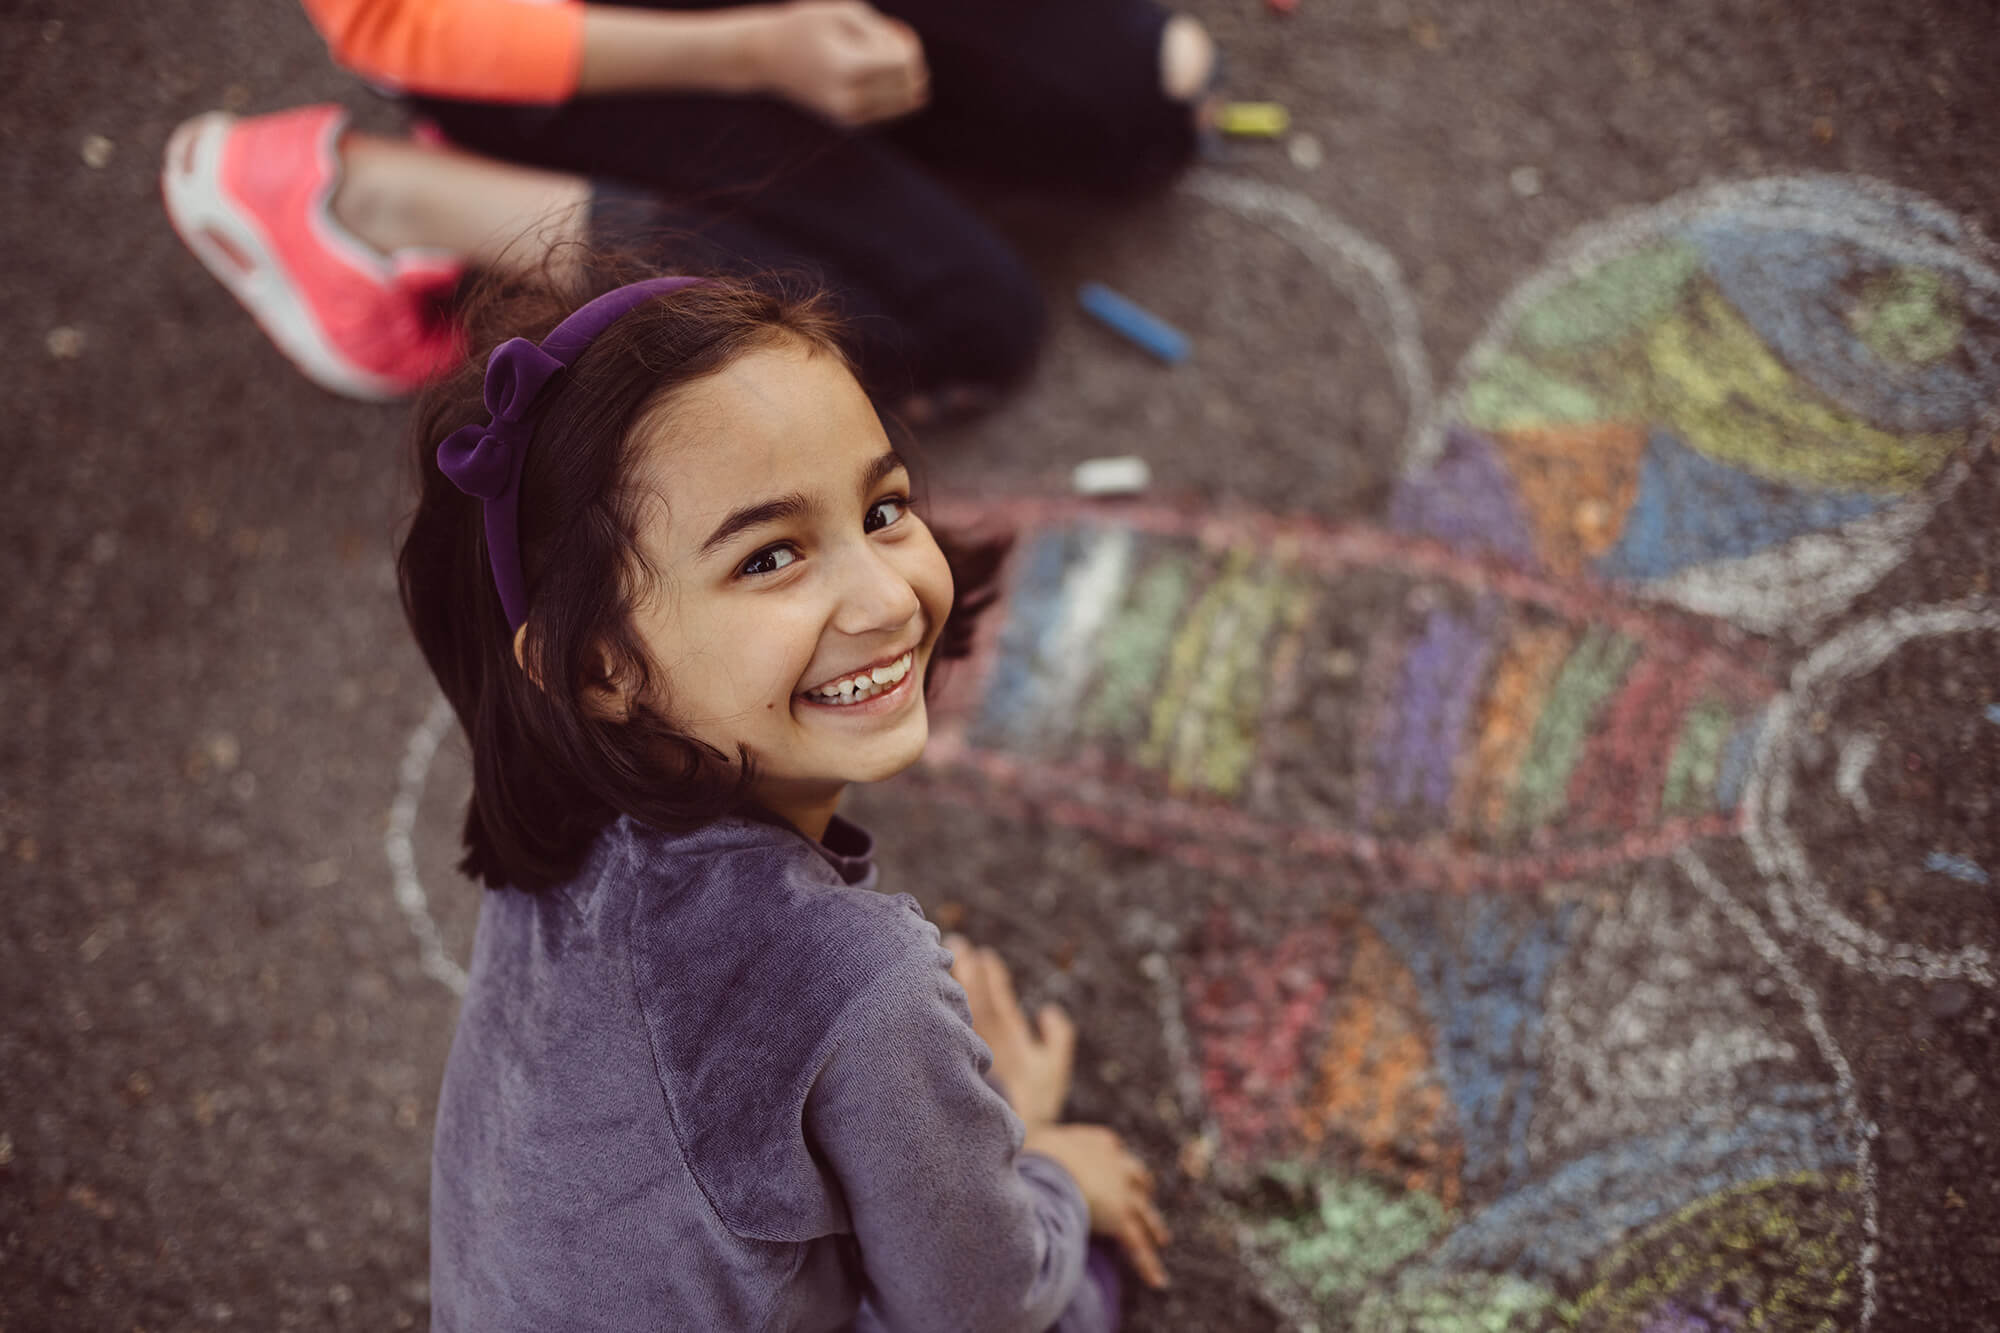 En pige er i gang med at tegne med kridt på asfalten og smiler til kameraet